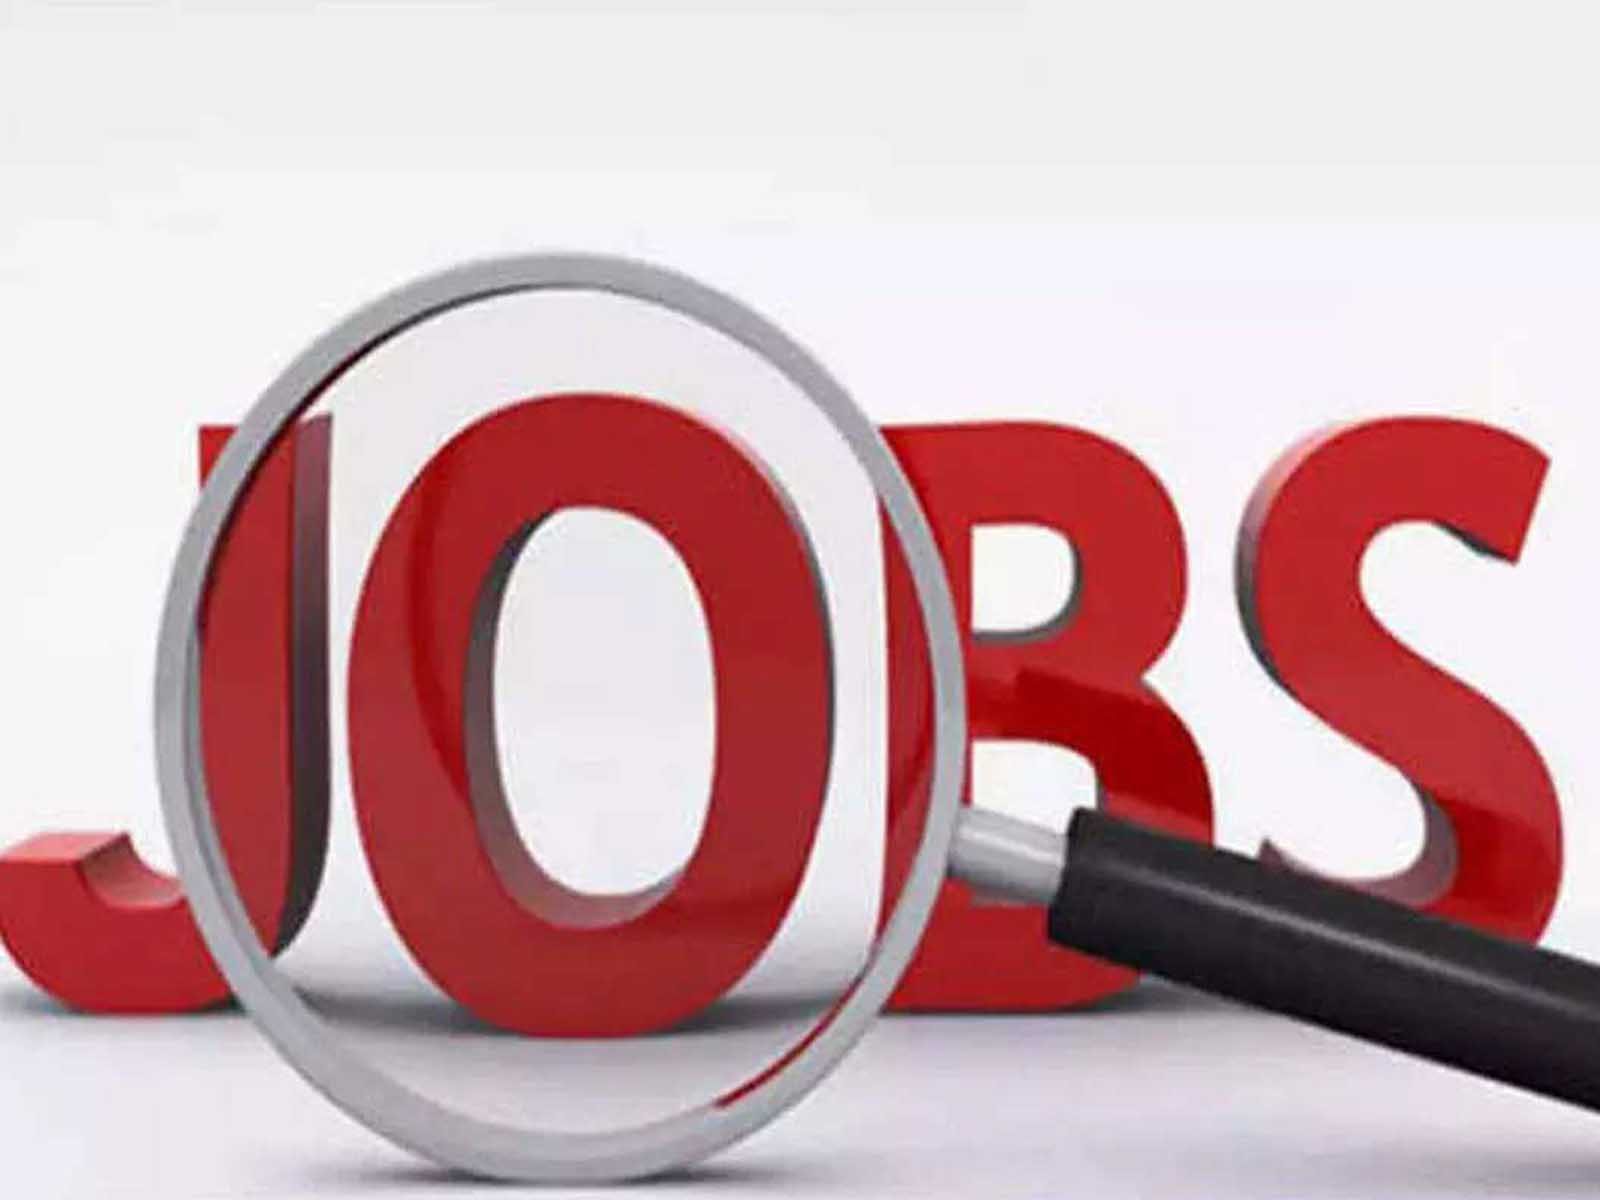 Government Jobs: TNPSC ਨੇ ਫਿਸ਼ਰੀਜ਼ ਸਬ ਇੰਸਪੈਕਟਰ ਦੀਆਂ ਕੱਢੀਆਂ ਪੋਸਟਾਂ, ਜਲਦ ਕਰੋ ਅਪਲਾਈ
